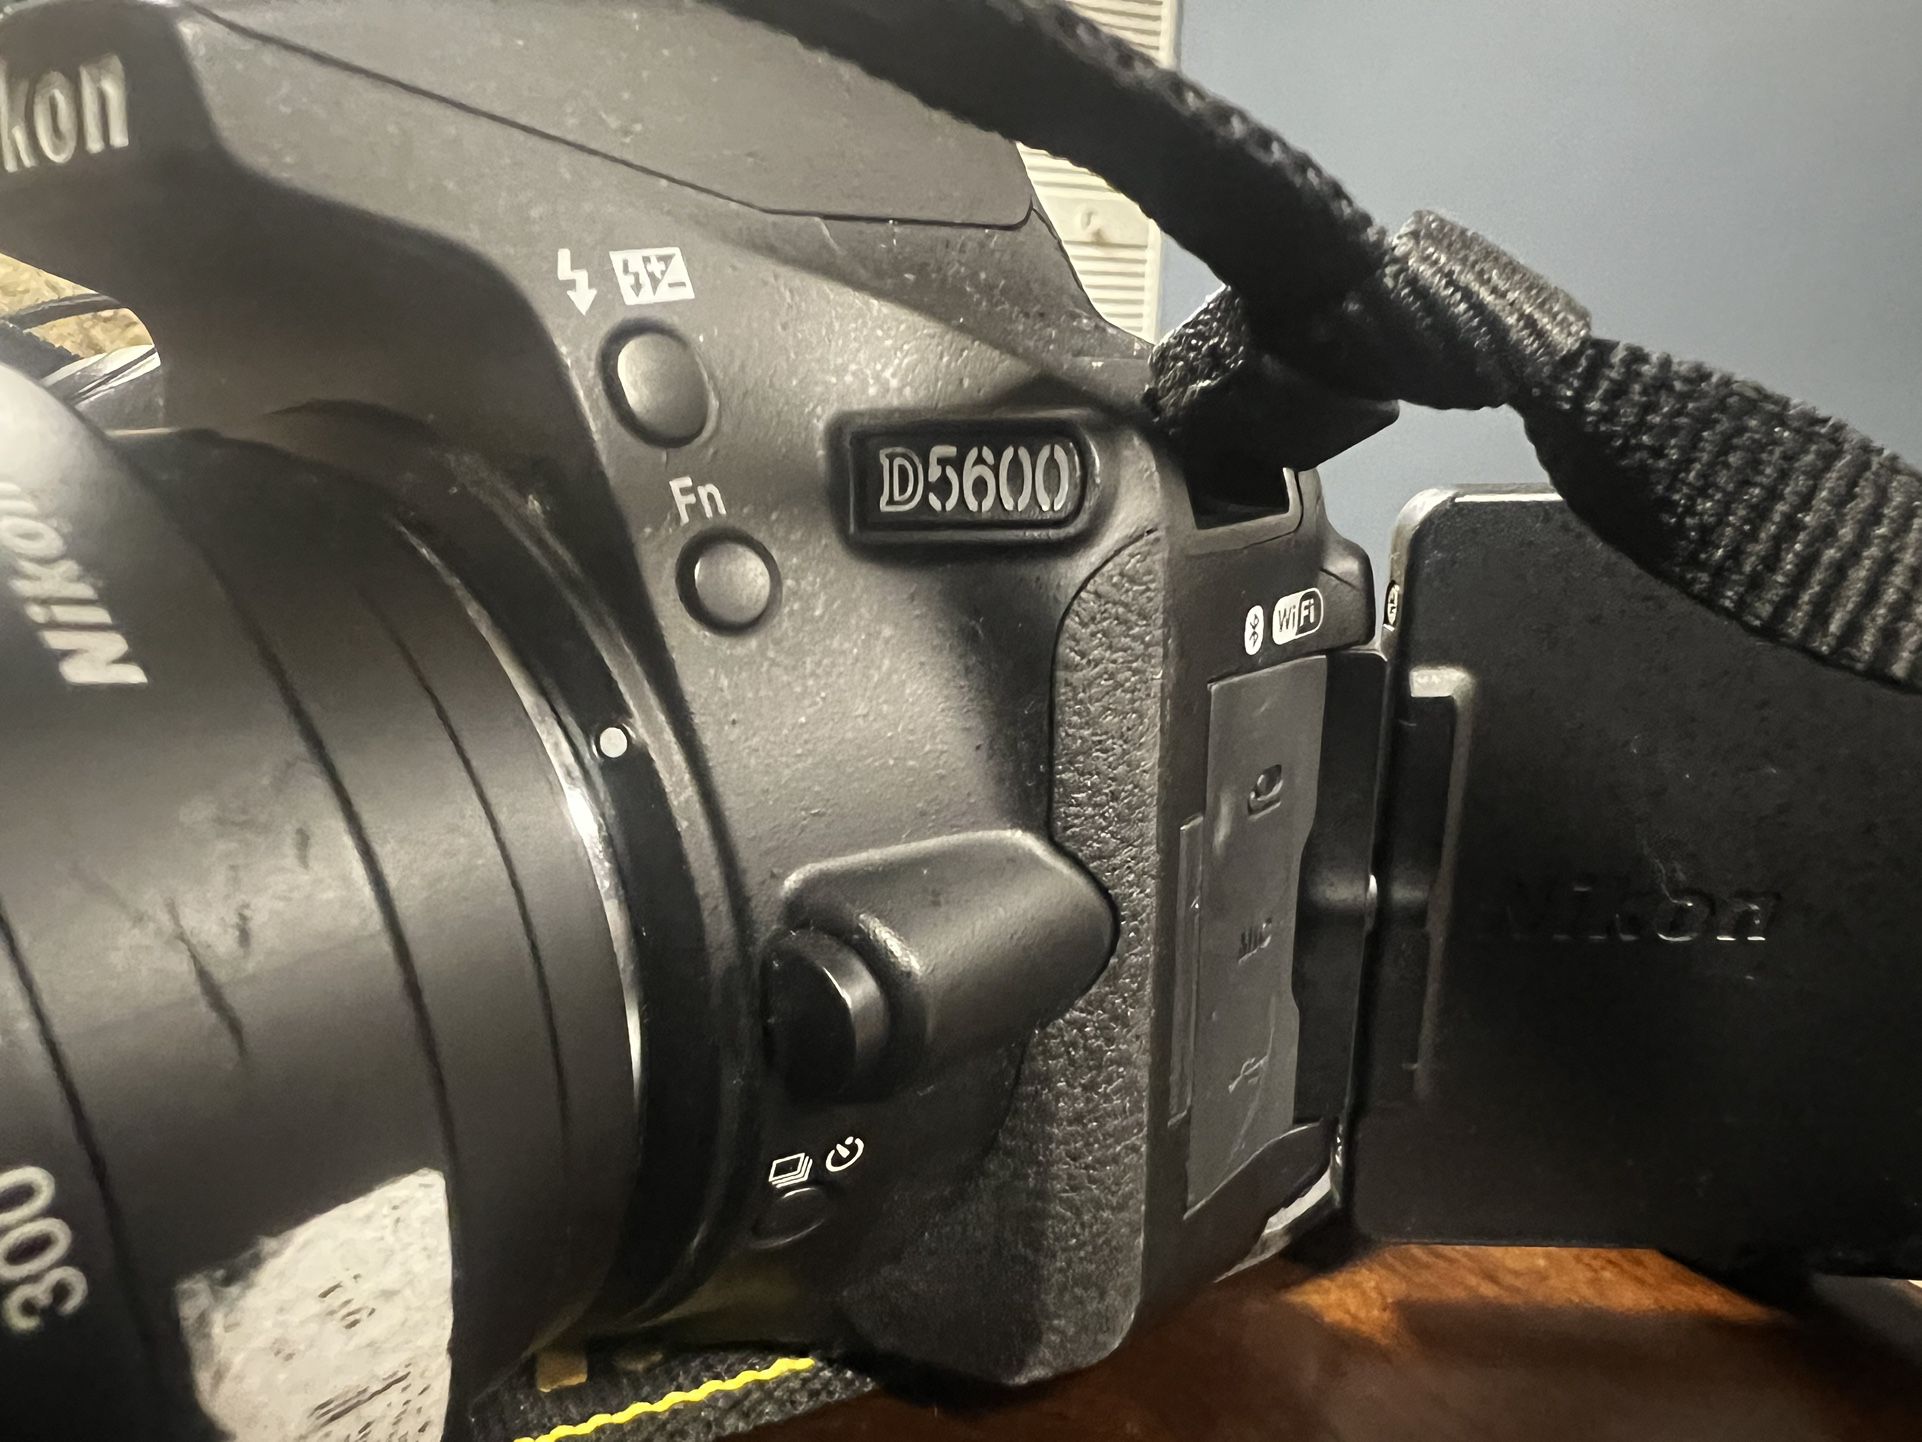 Nikon D5600 DSLR Camera